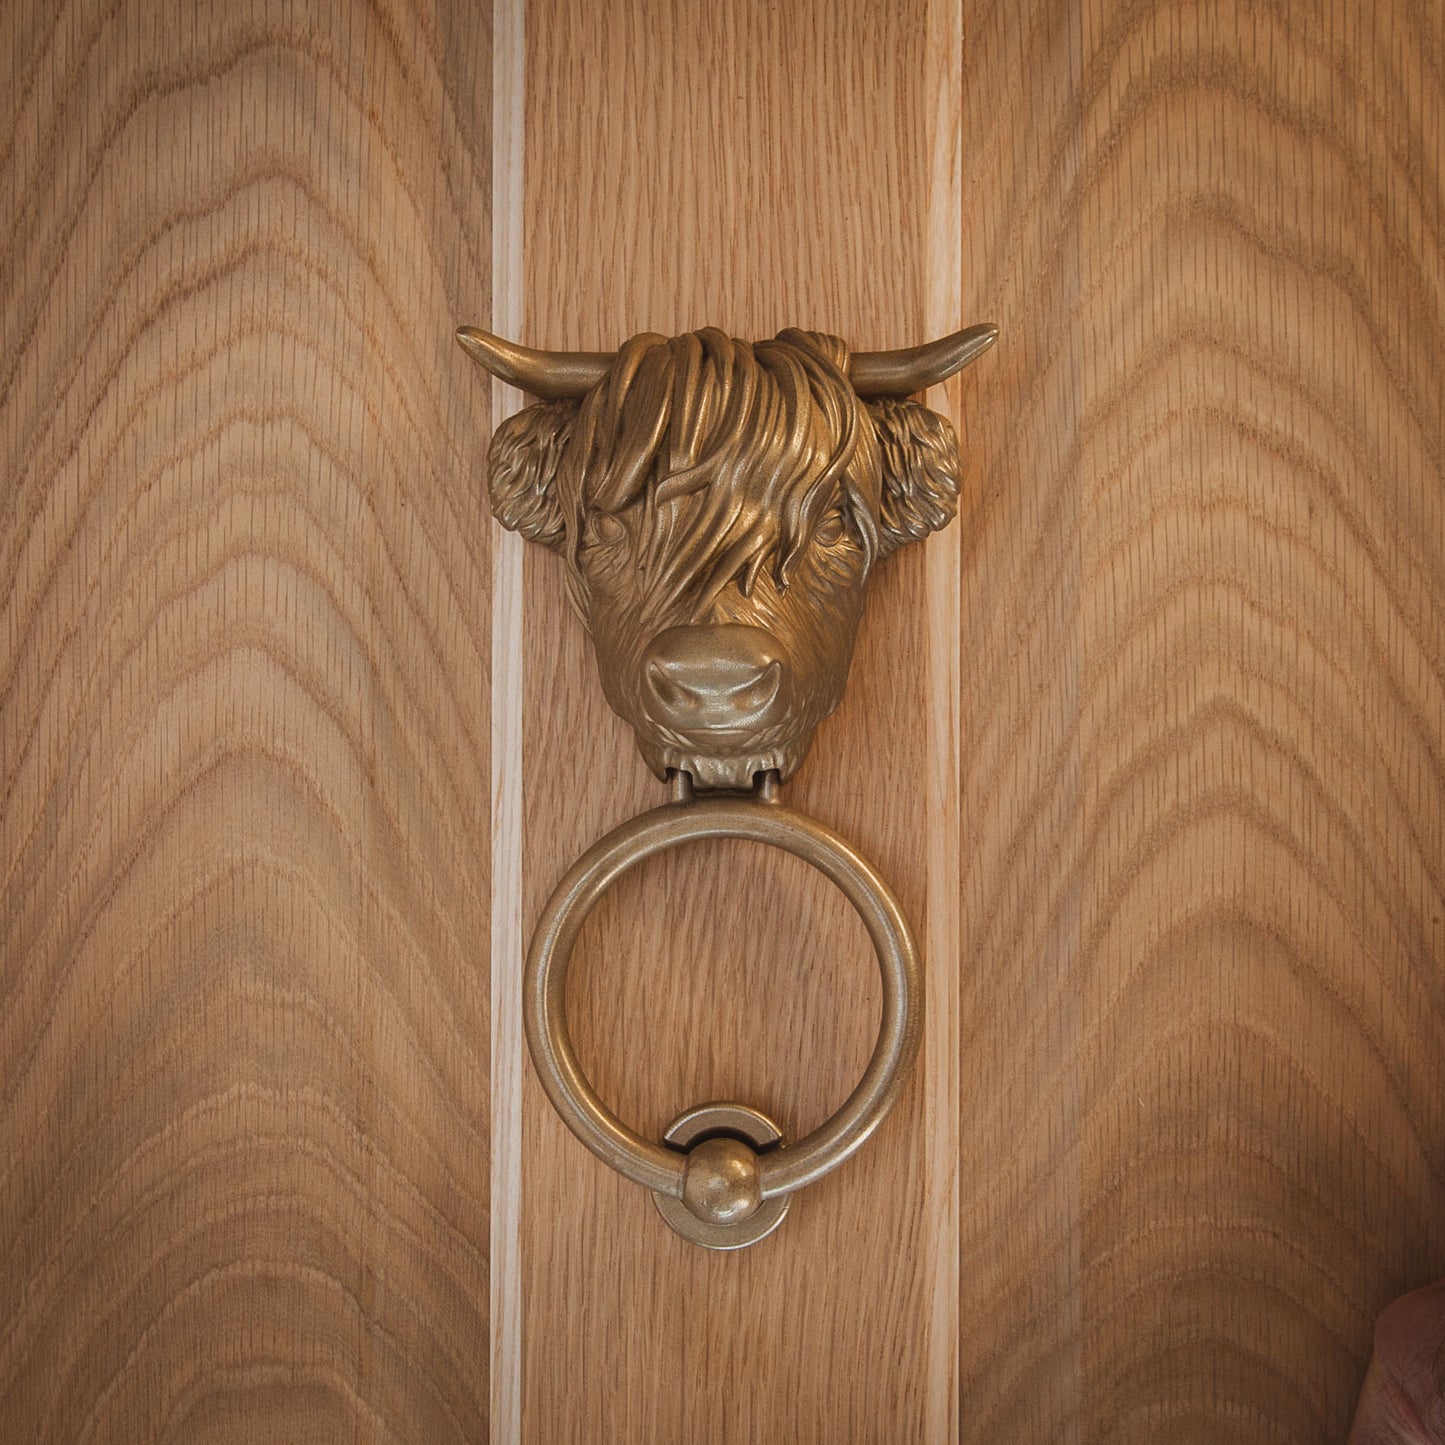 Highland Cow Door Knocker (2 styles)